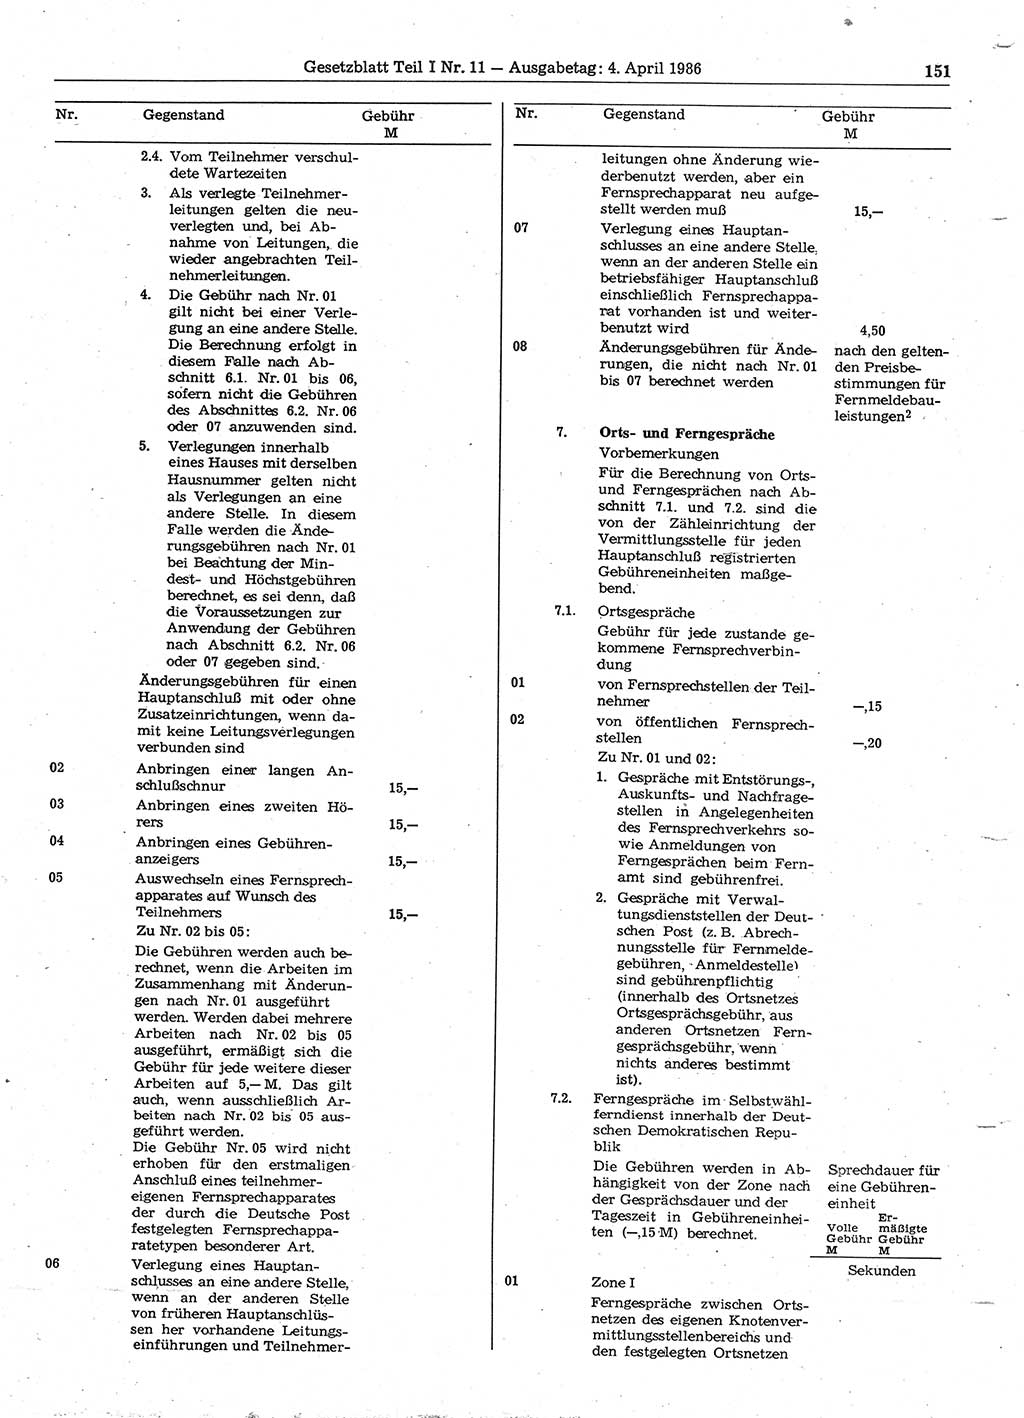 Gesetzblatt (GBl.) der Deutschen Demokratischen Republik (DDR) Teil Ⅰ 1986, Seite 151 (GBl. DDR Ⅰ 1986, S. 151)